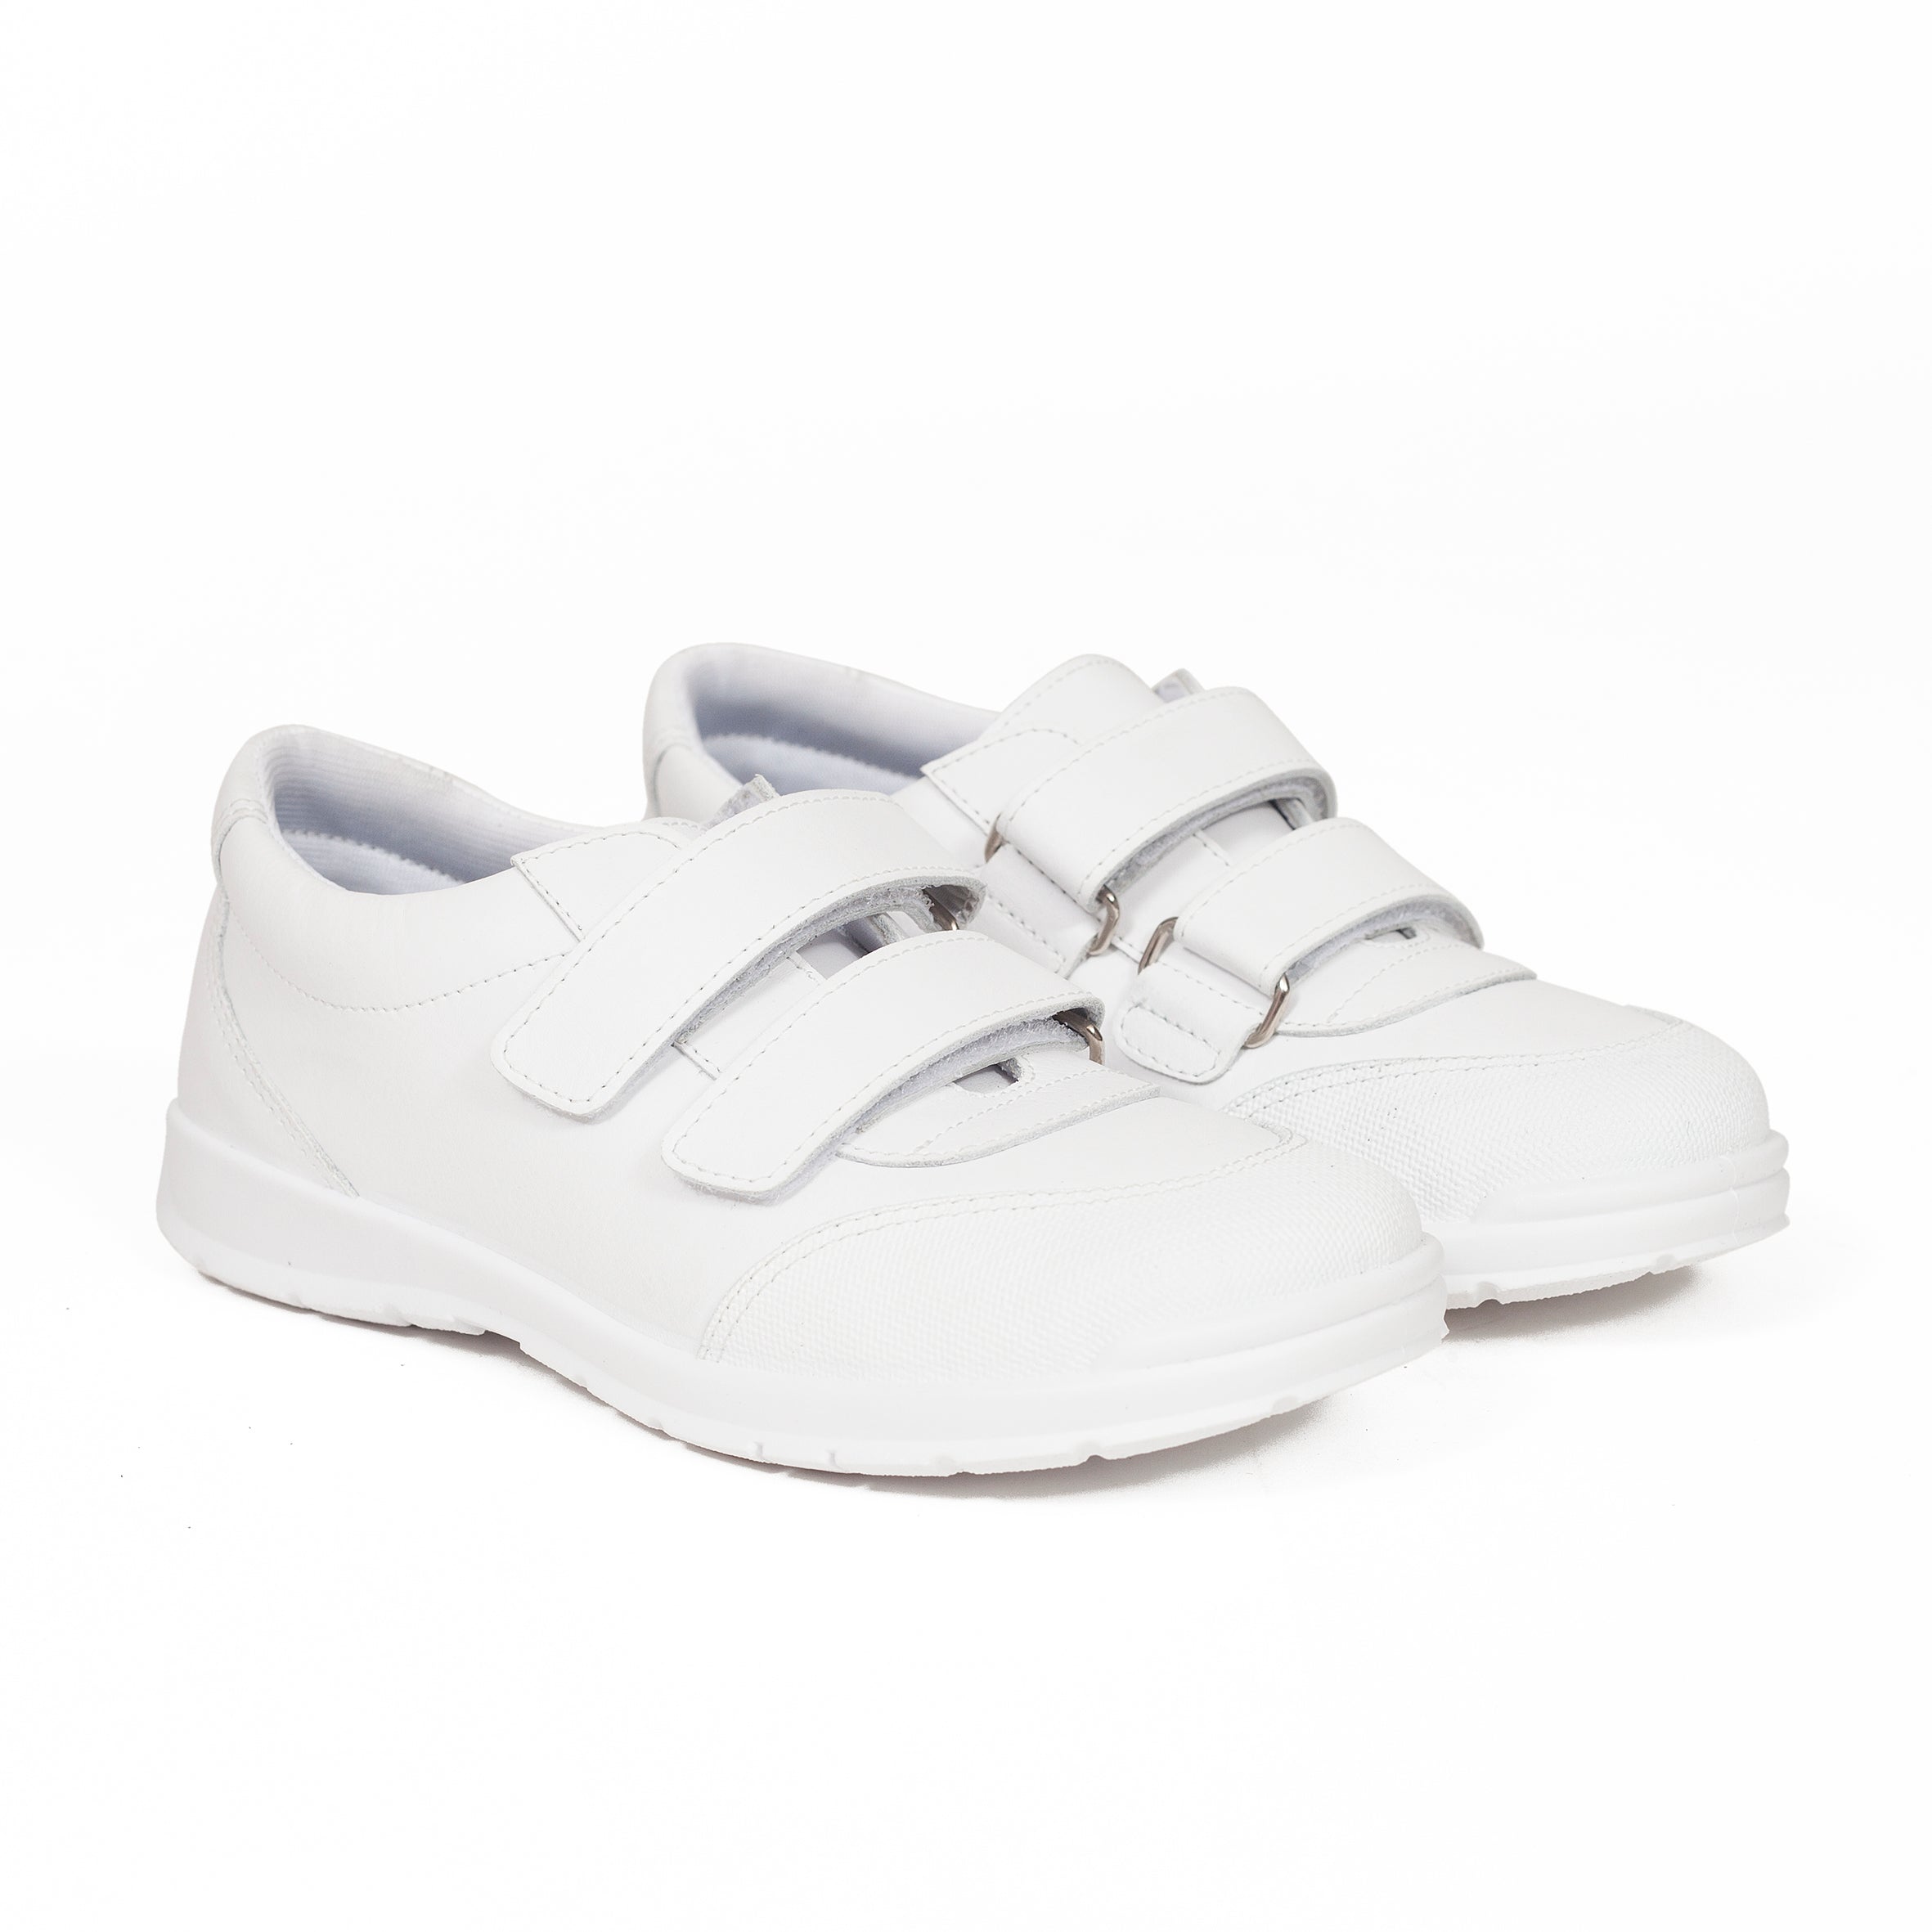 Zapatos colegiales niño blanco piel lavable hechos en España